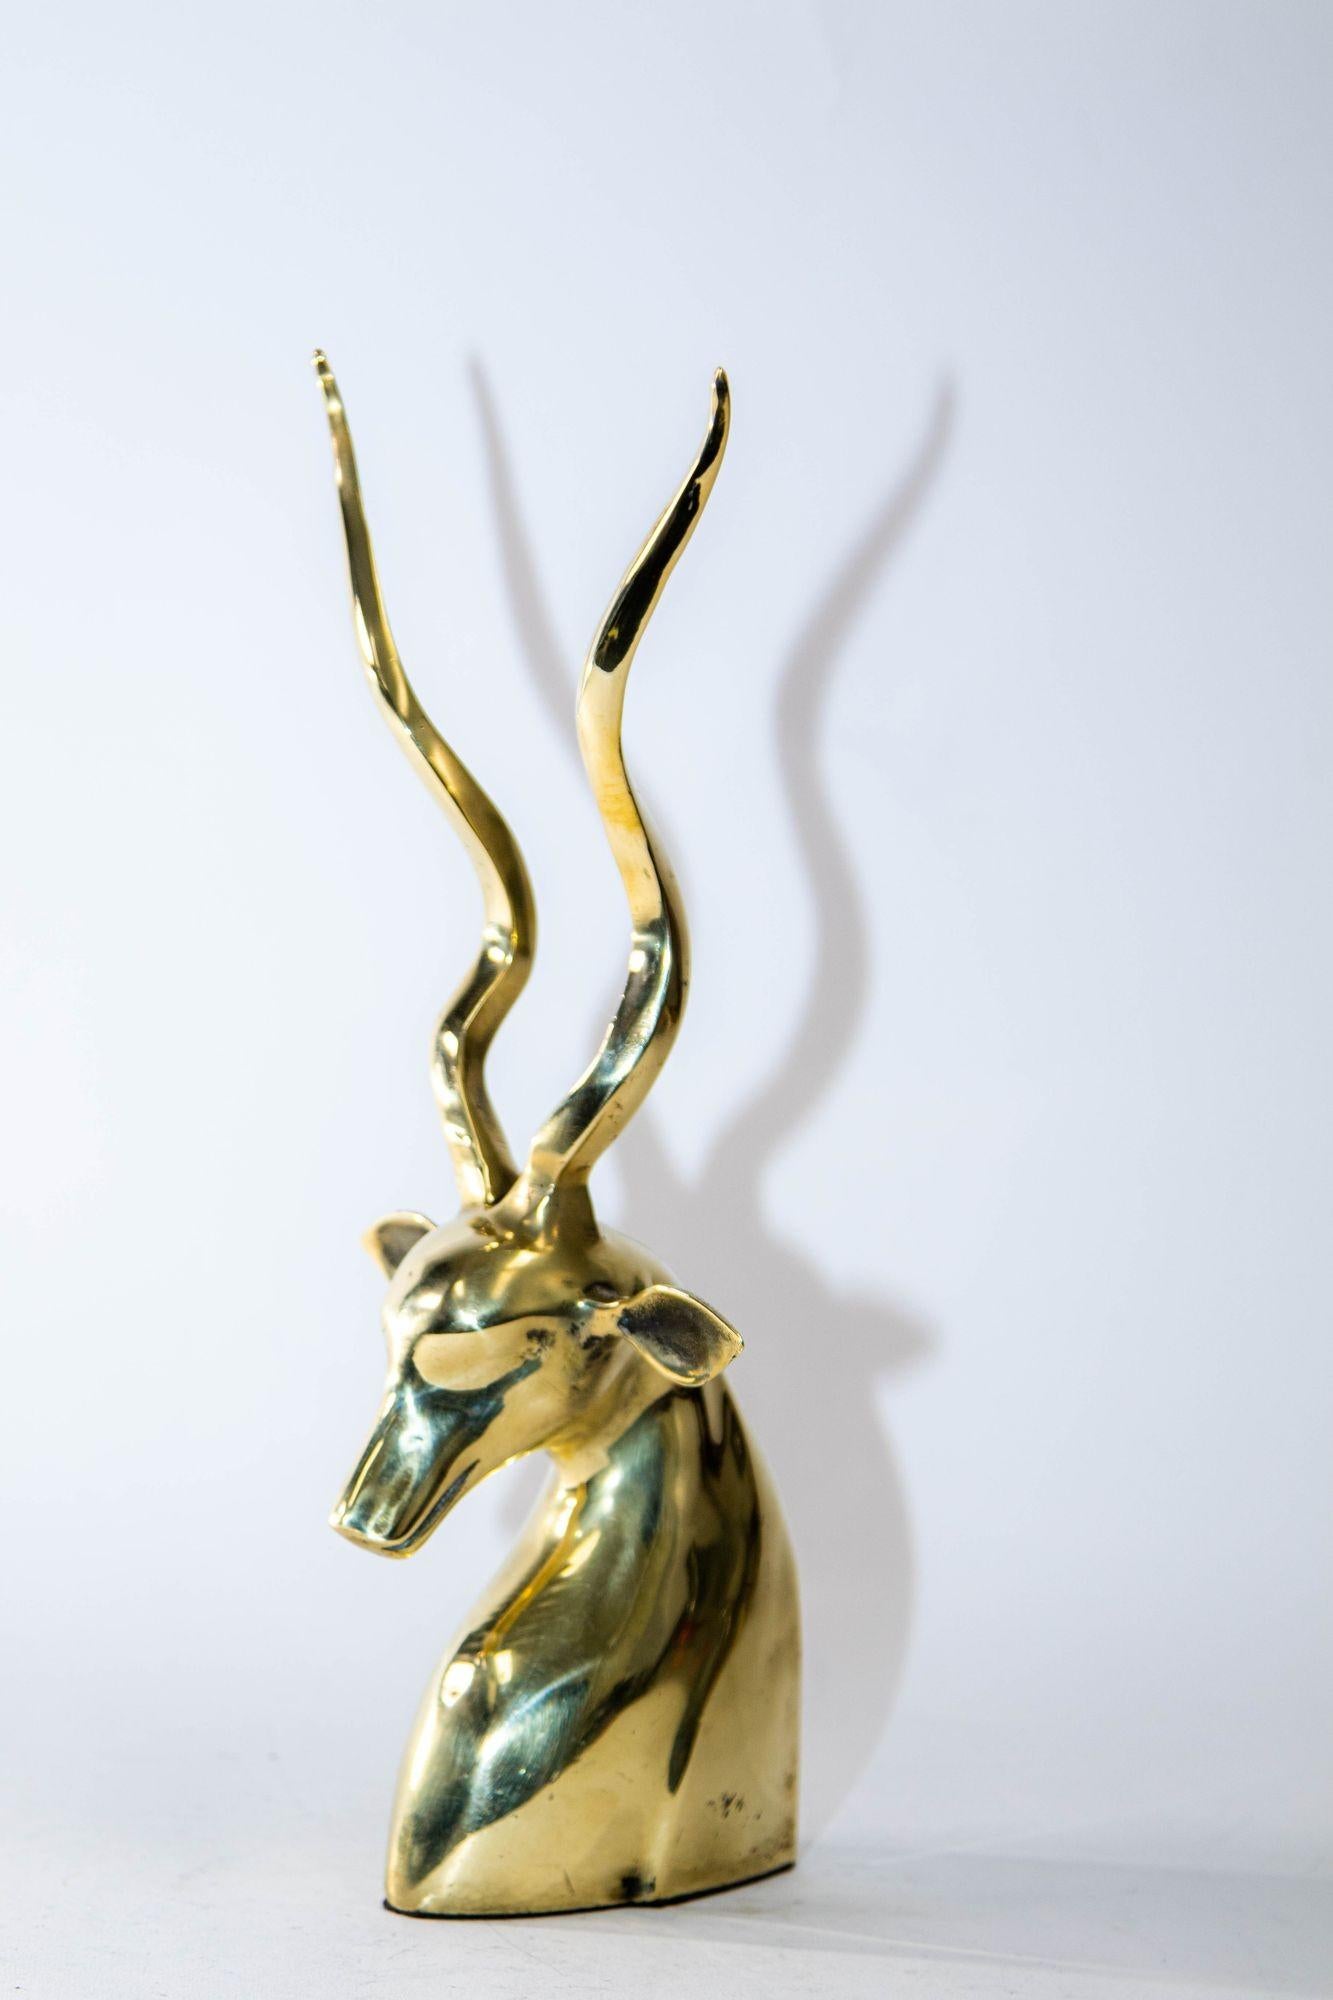 Art Deco-Stil Messing dekorative Antilope Gazelle oder Kudu Büste Skulptur.
Messingbüste Gazelle Antilope mit hohem Geweih als Dekorationsobjekt.
Polierte Messingbüste einer afrikanischen Kudu-Antilope, ähnlich einer Gazelle, mit großen gedrehten